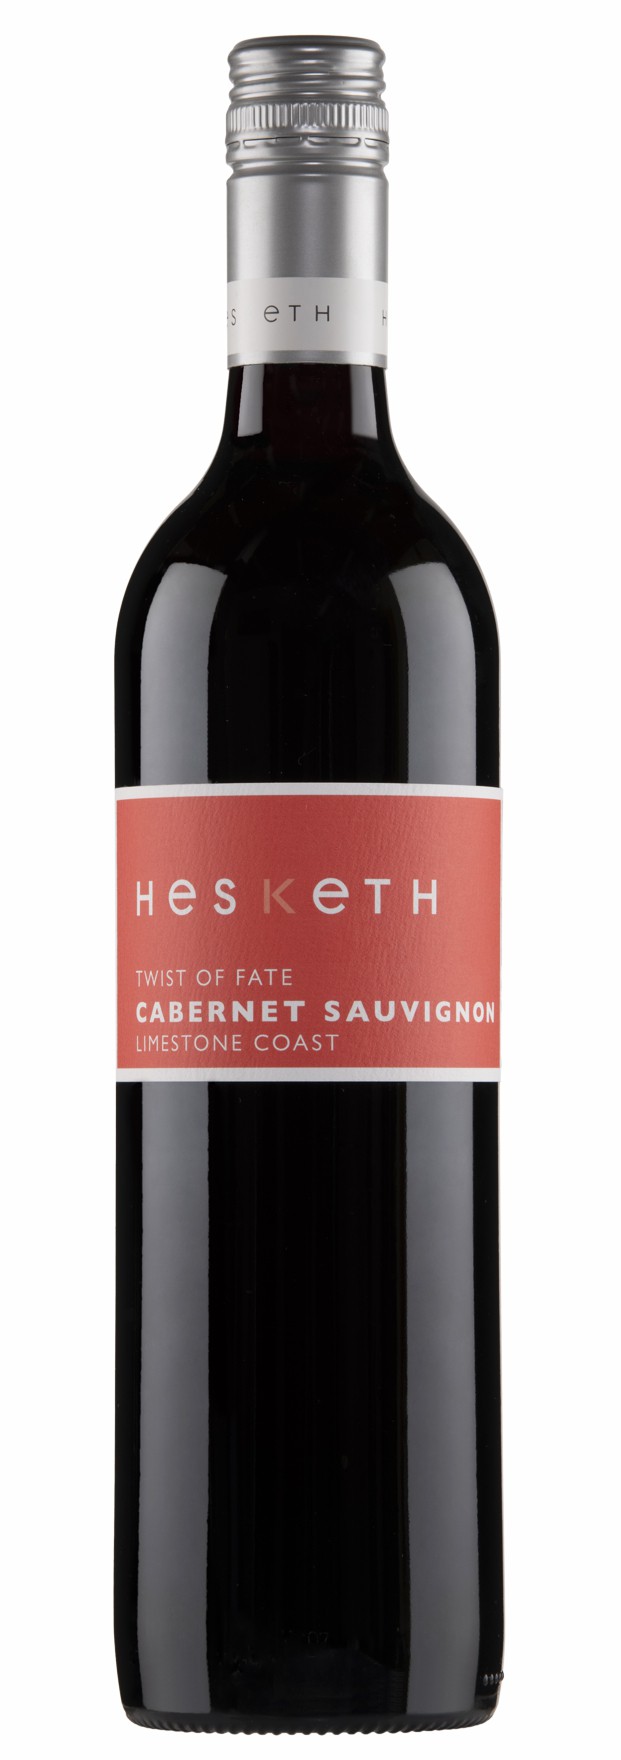 Hesketh - Cabernet sauvignon Twist of Fate